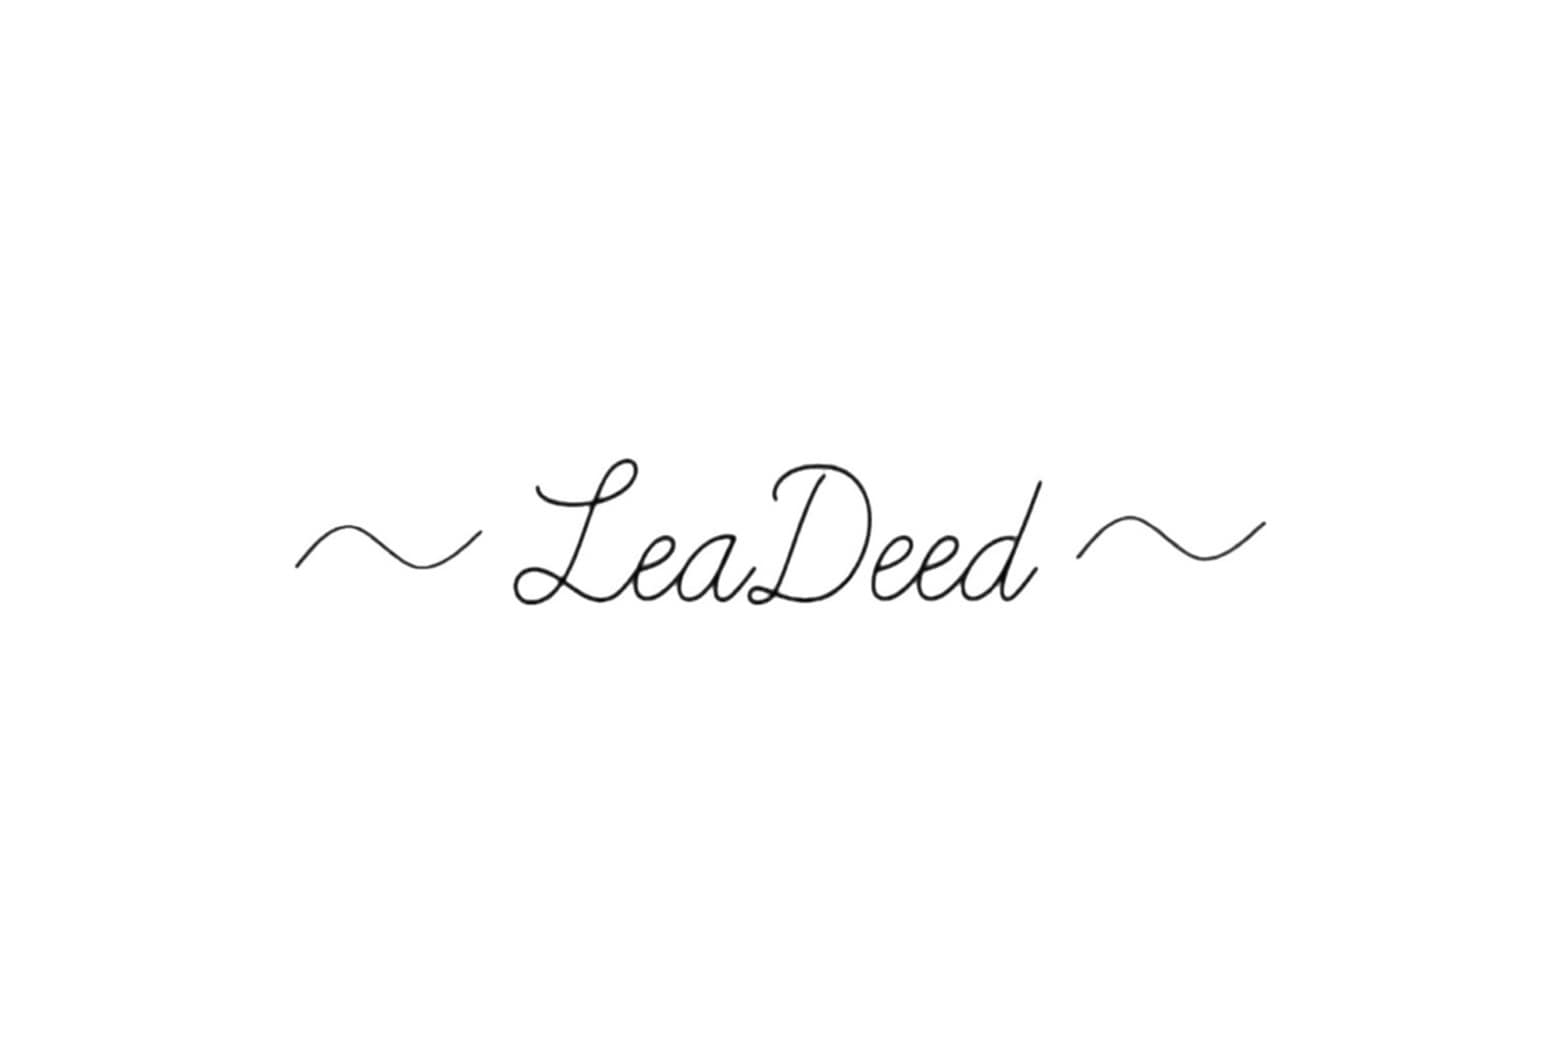 LeaDeedのロゴ